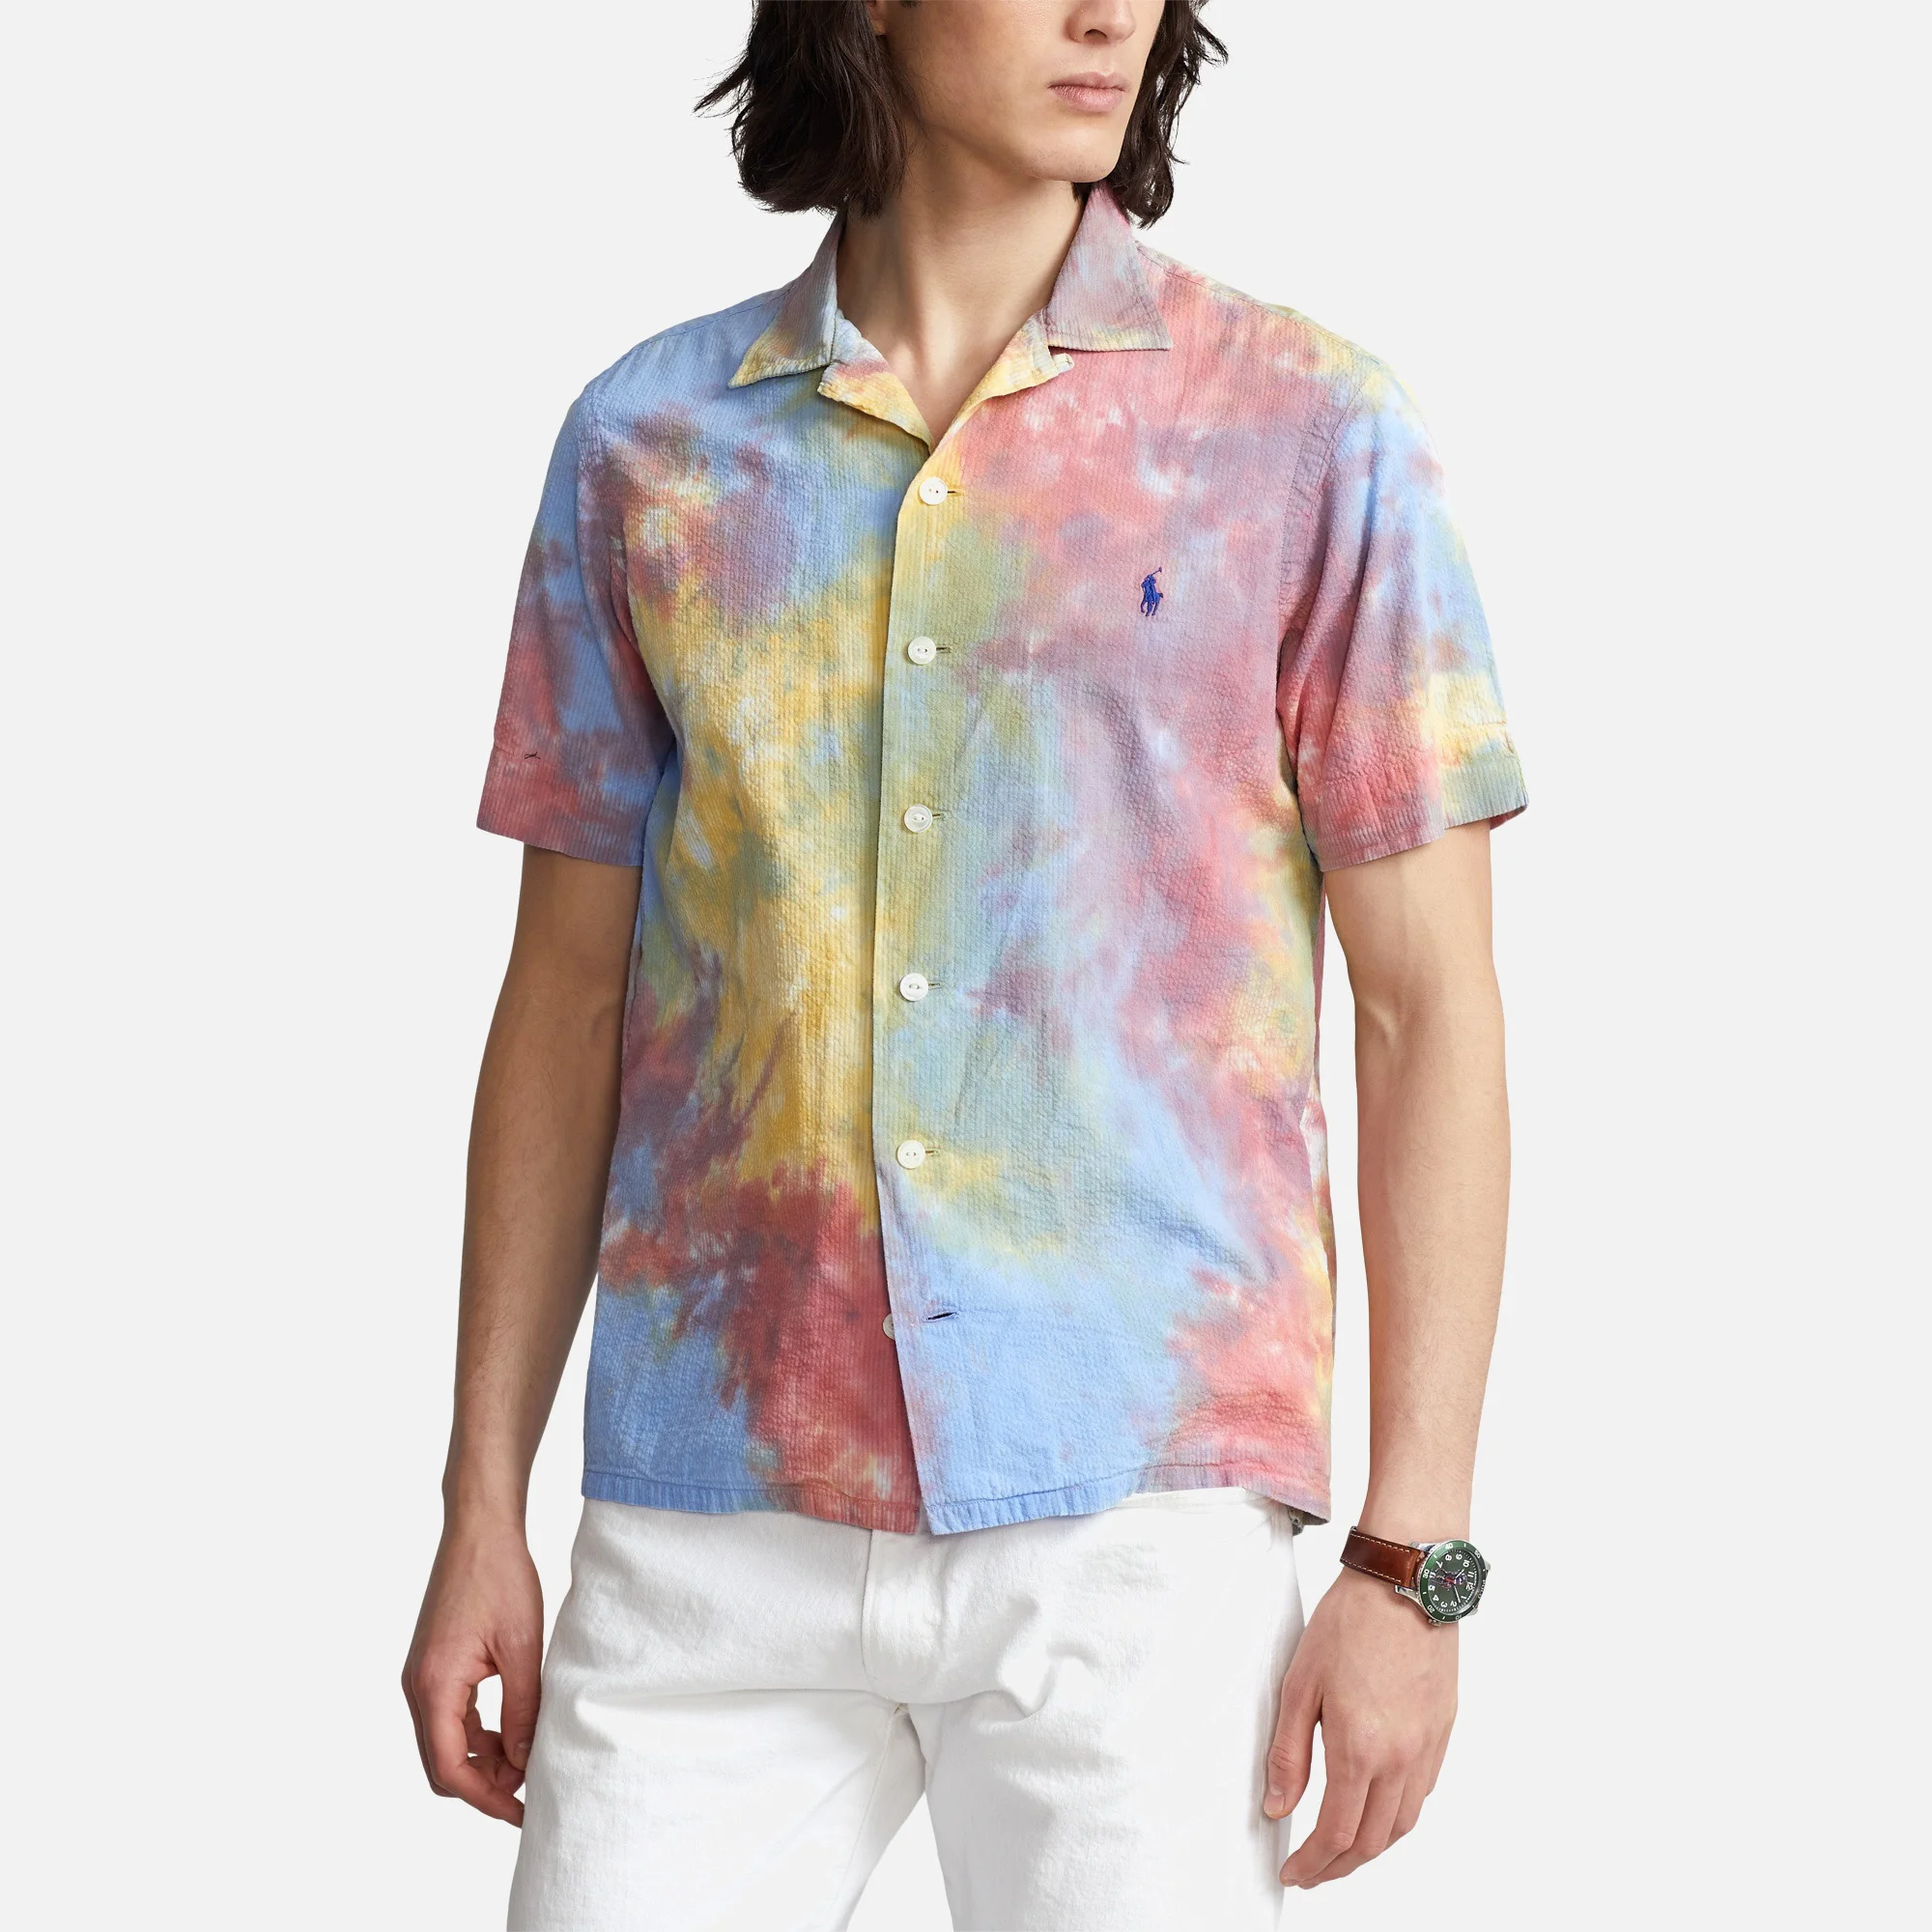 Polo Ralph Lauren Men's Seersucker Short Sleeve Shirt - Tie Dye Multi Image 1